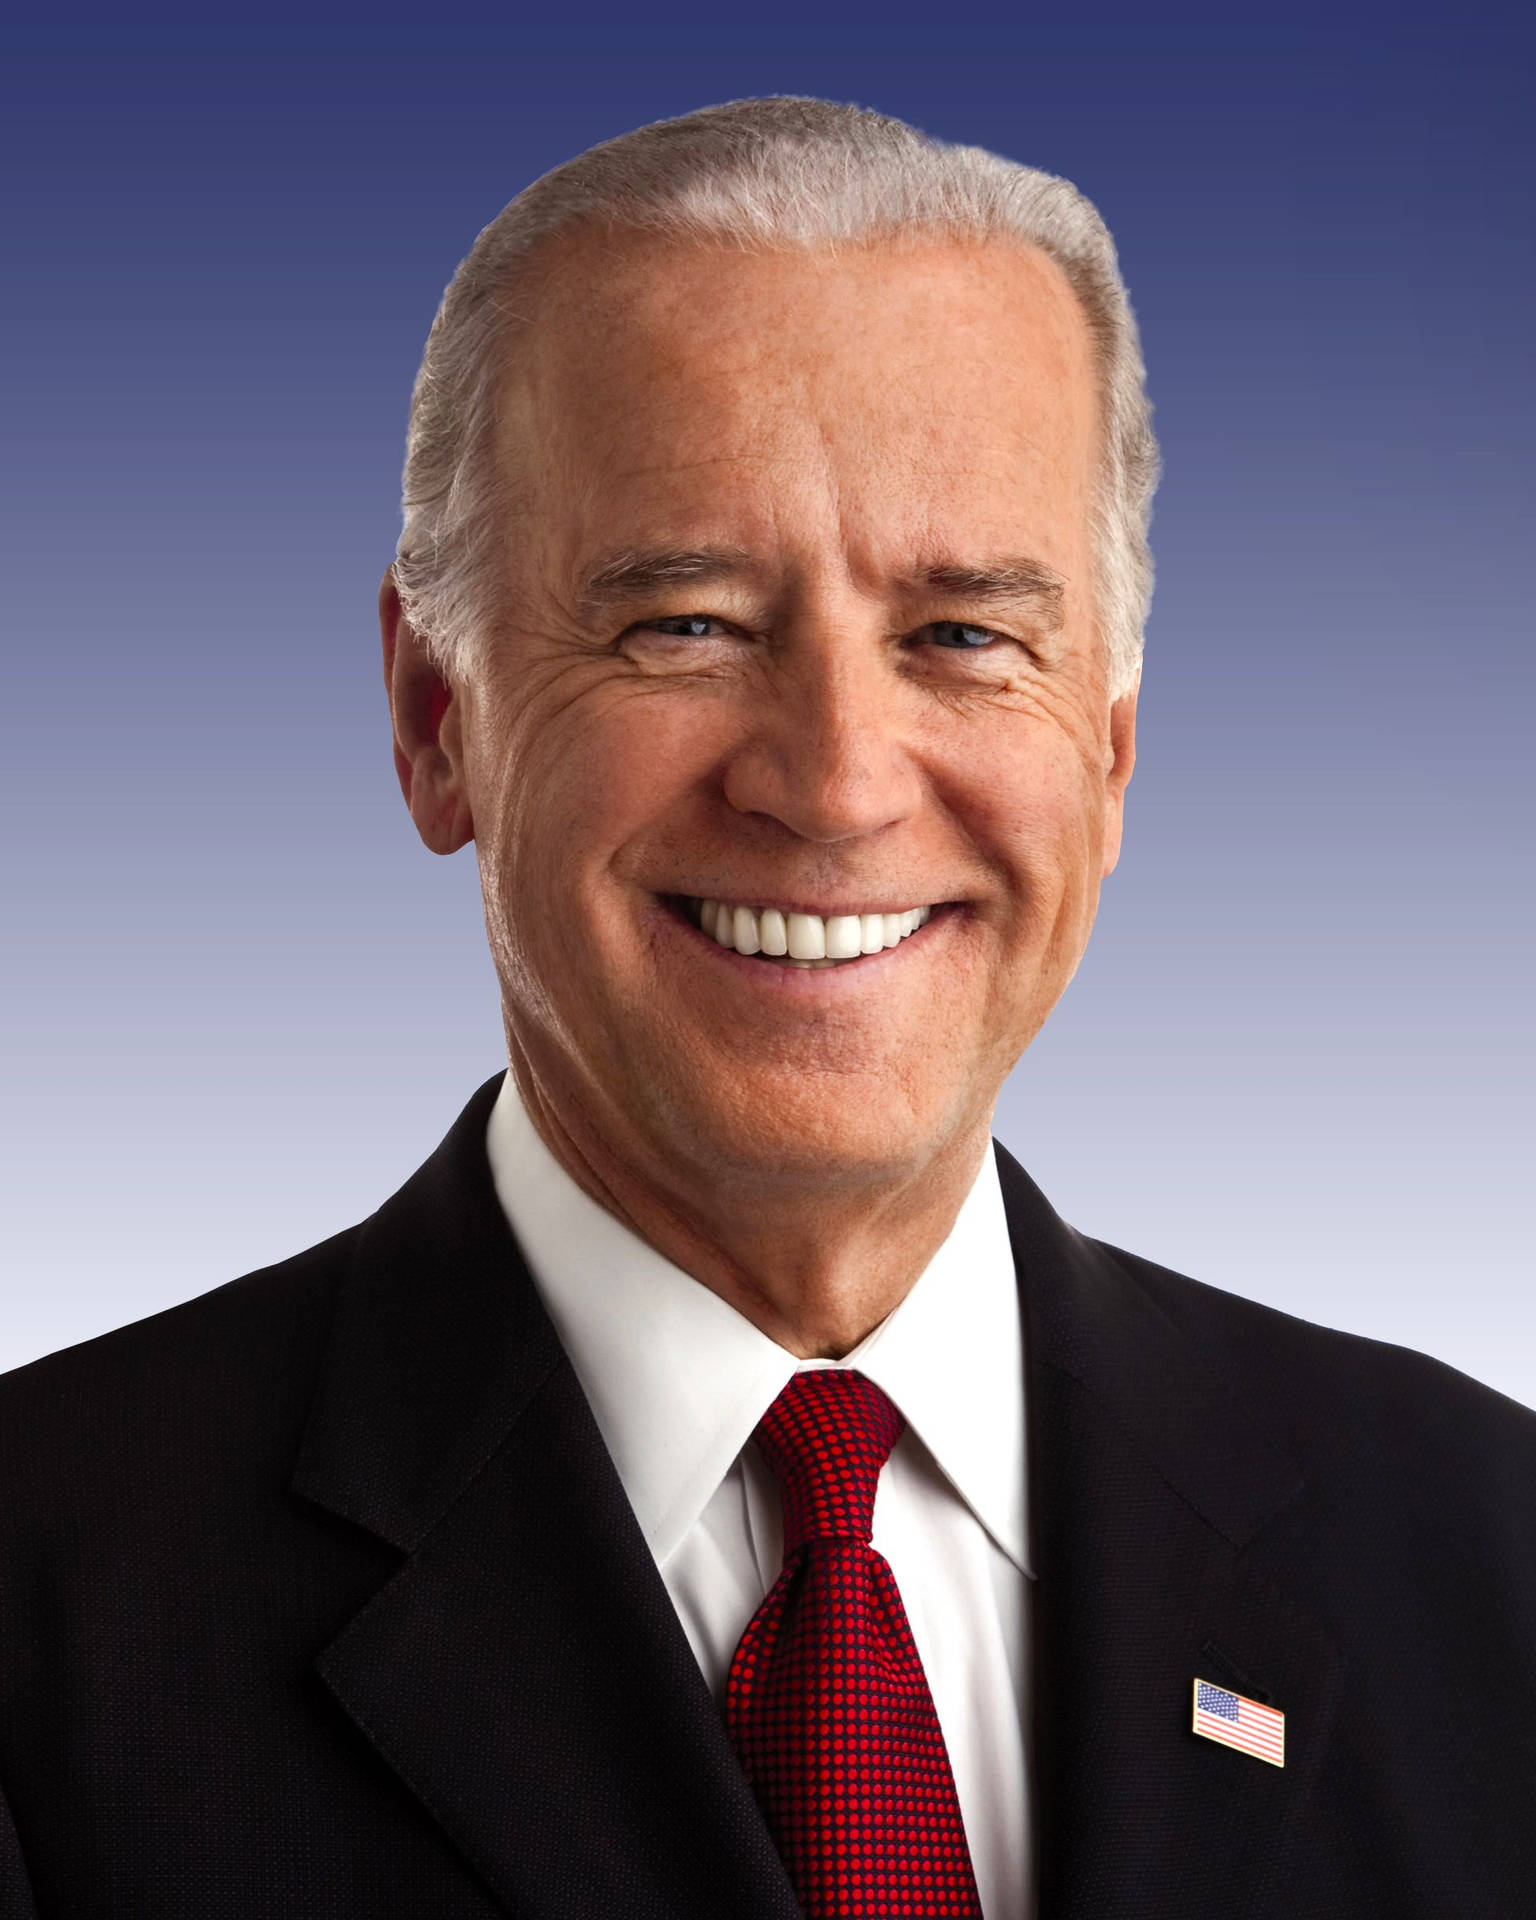 Image  Joe Biden Smiling Wallpaper